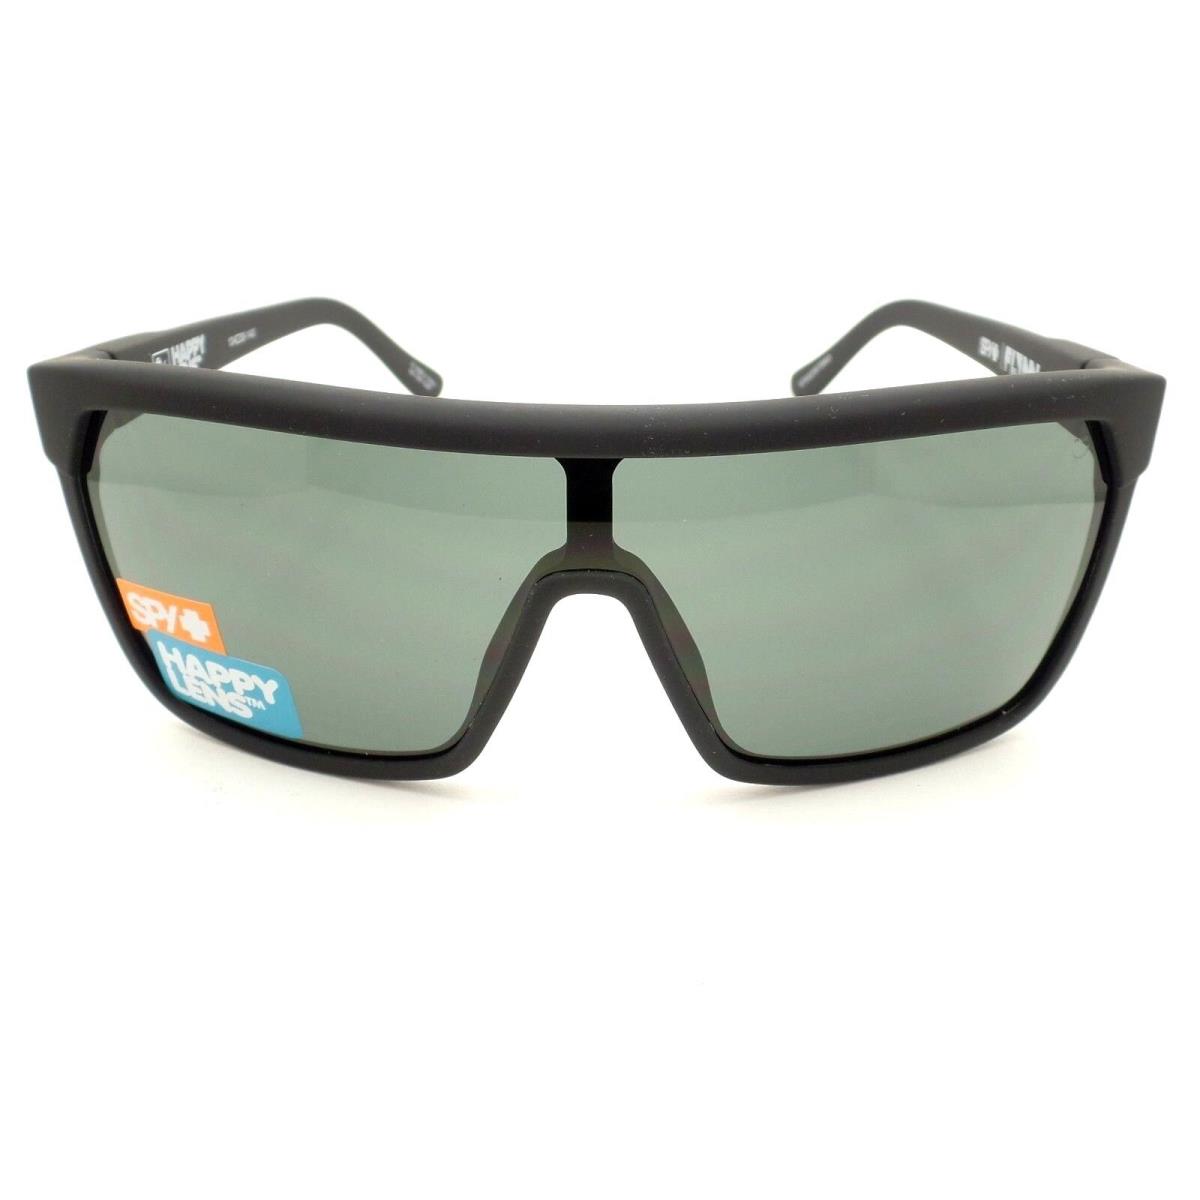 SPY Optics sunglasses Optic Flynn - Black Frame, Gray Lens 0